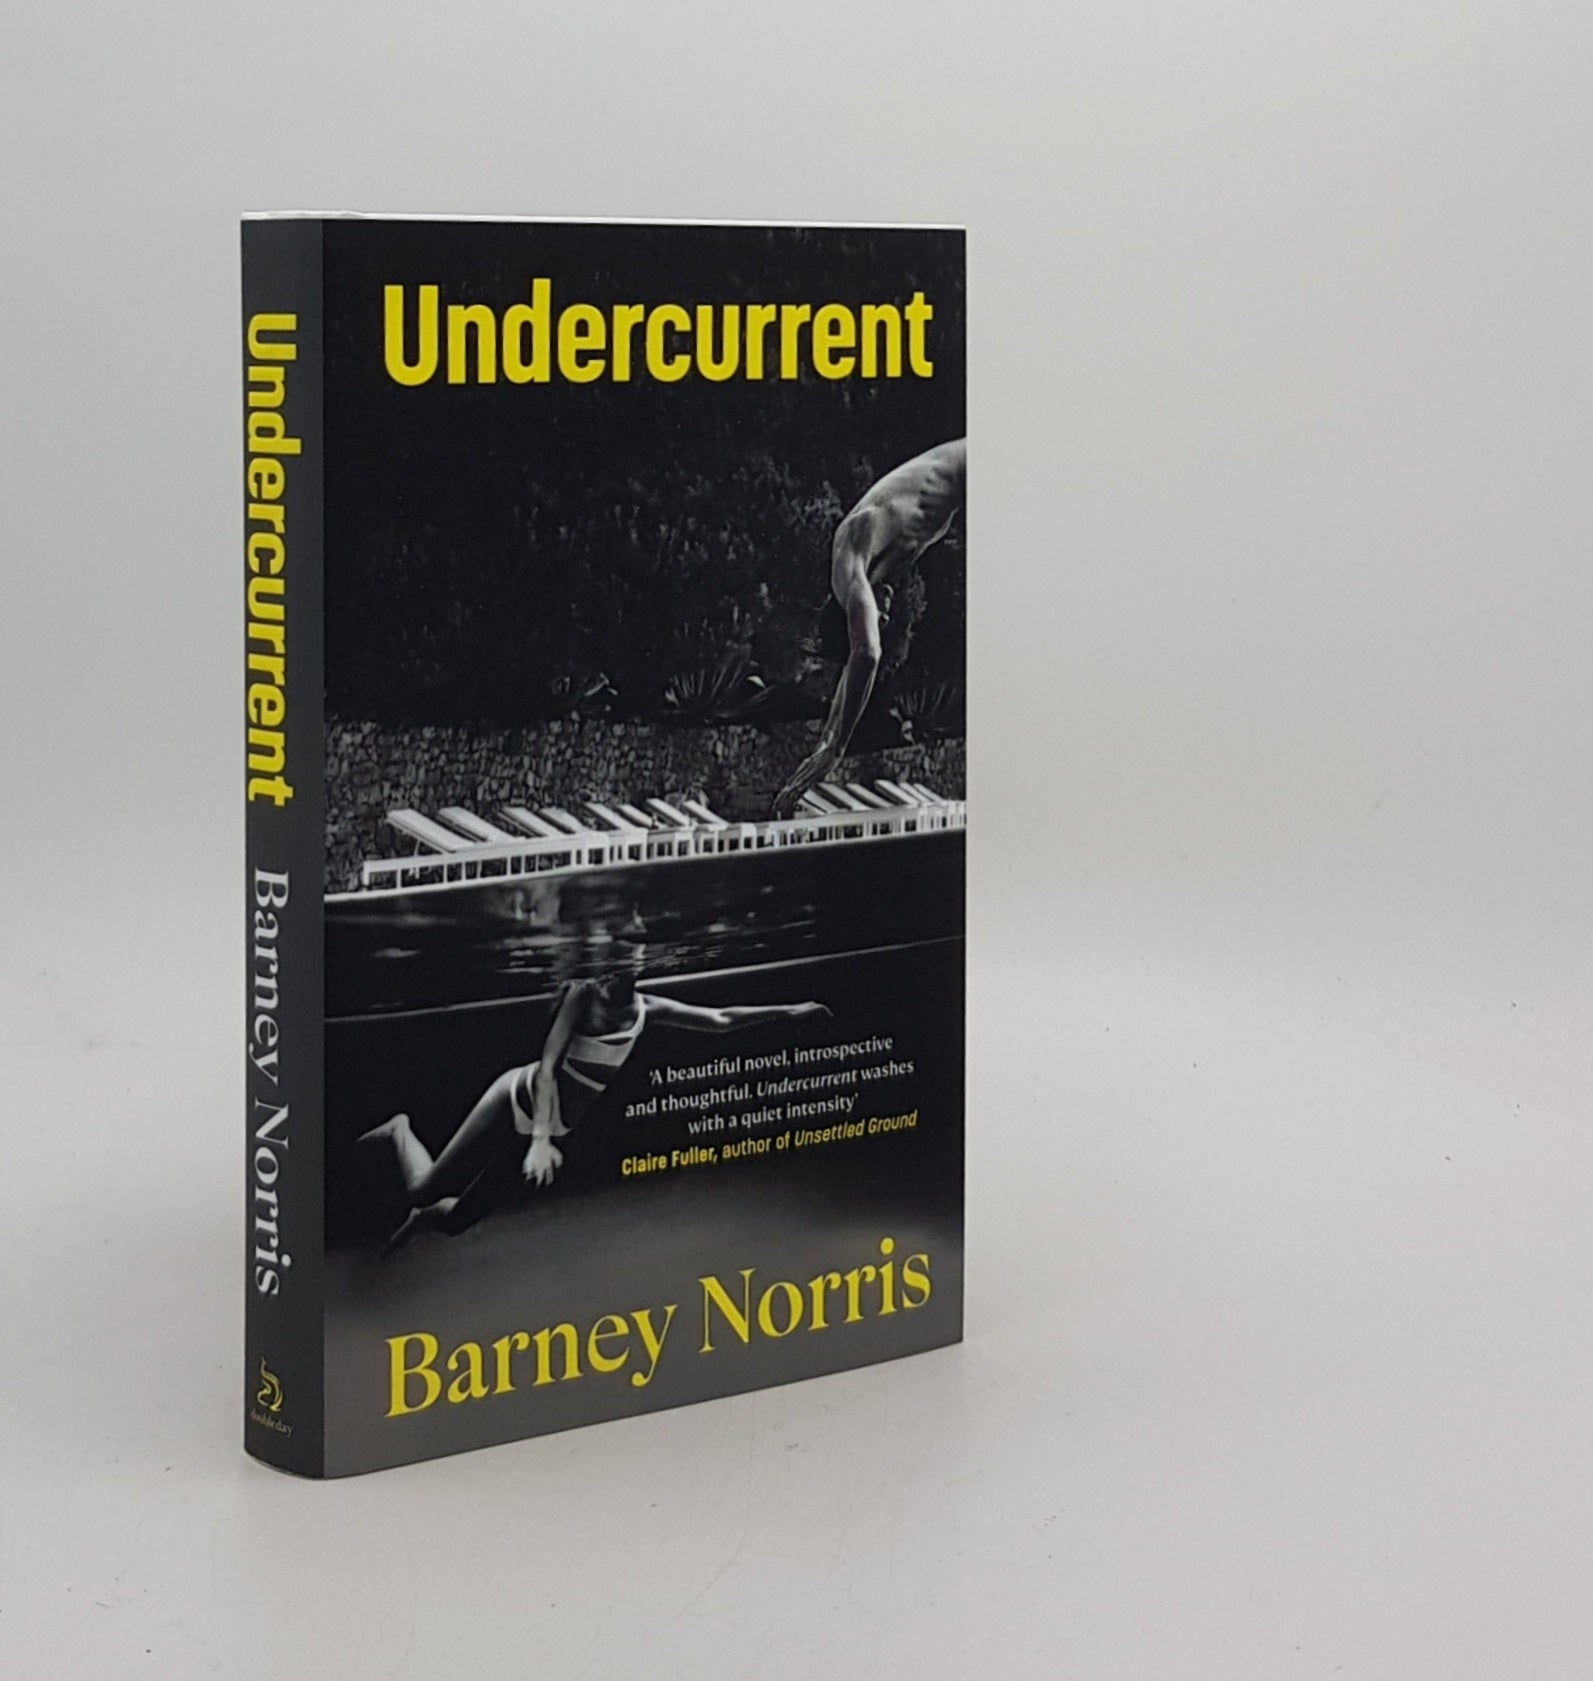 NORRIS Barney - Undercurrent